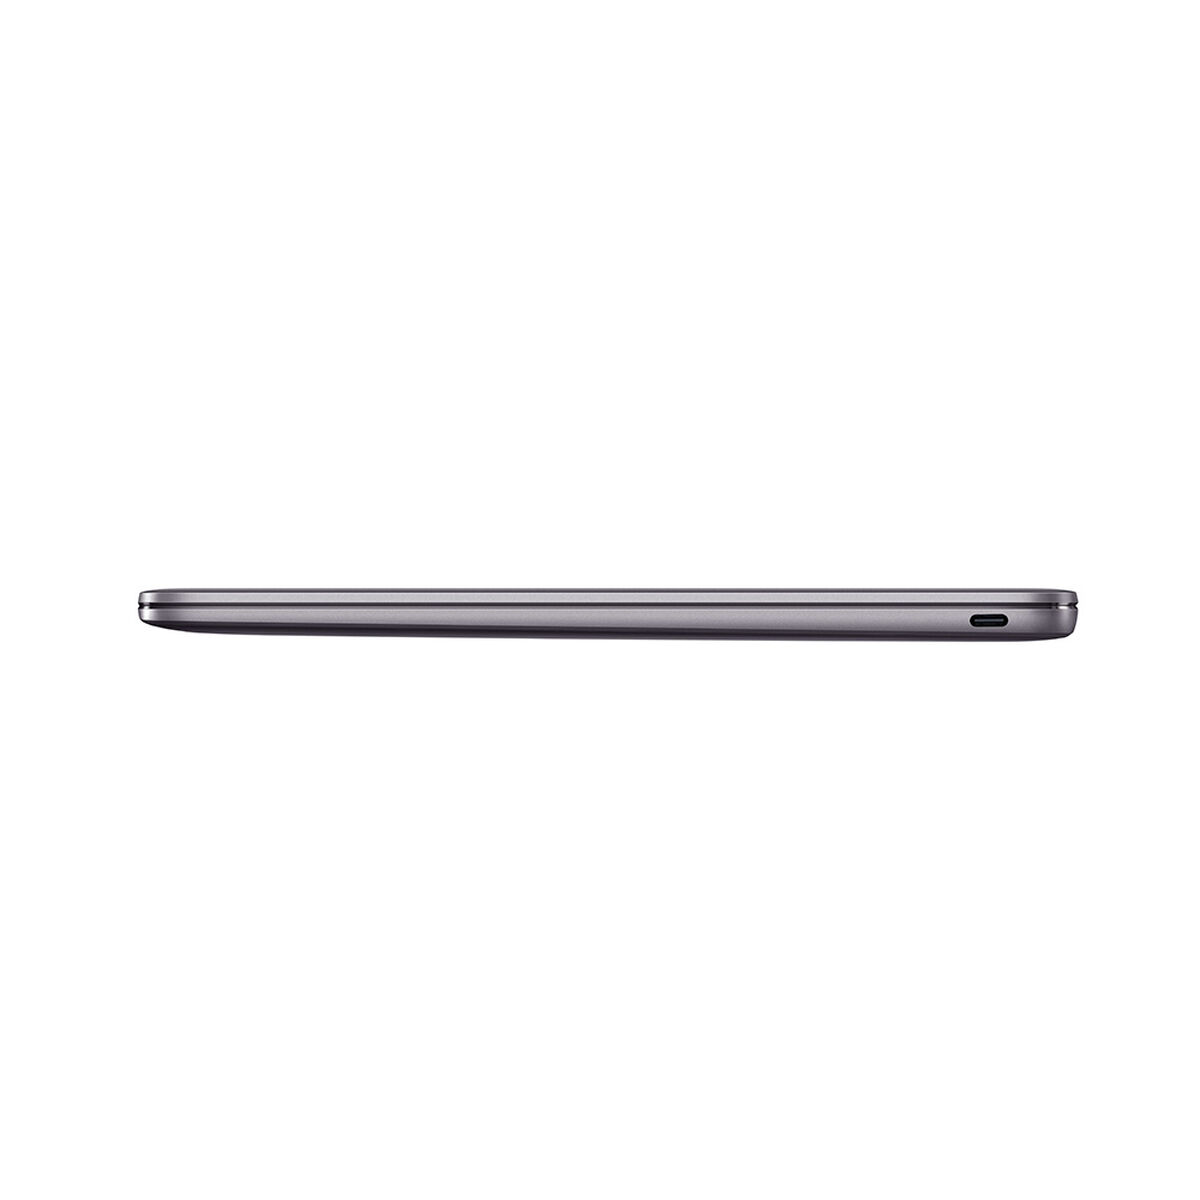 Notebook Huawei Matebook D13 Core i5 8GB 512GB SSD 13,3"